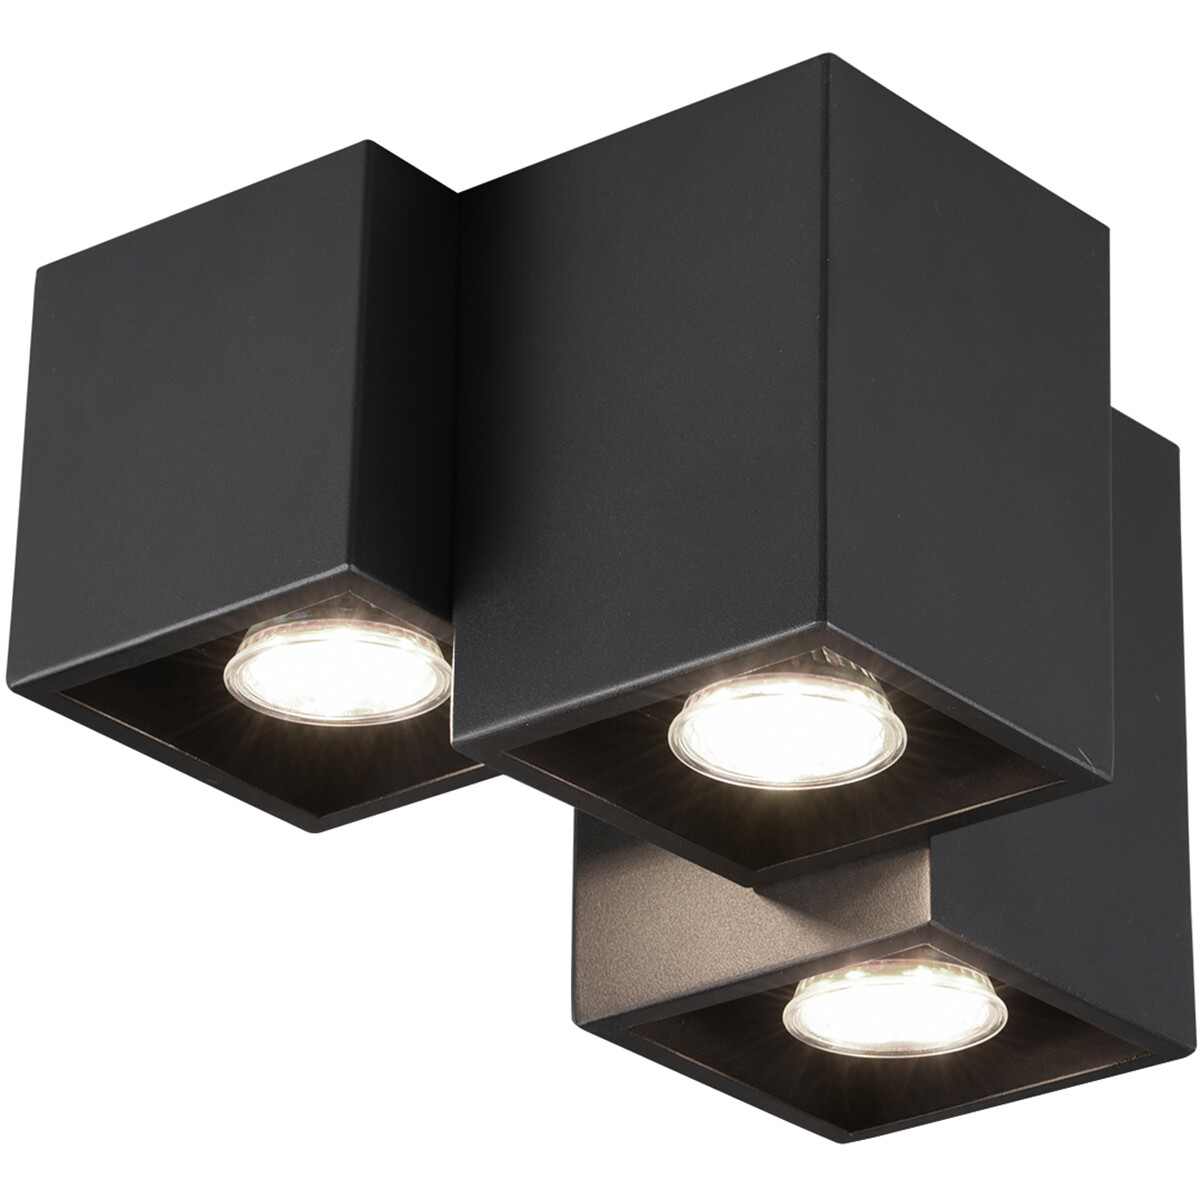 LED Plafondlamp - Plafondverlichting - Trion Ferry - GU10 Fitting - 3-lichts - Rechthoek - Mat Zwart